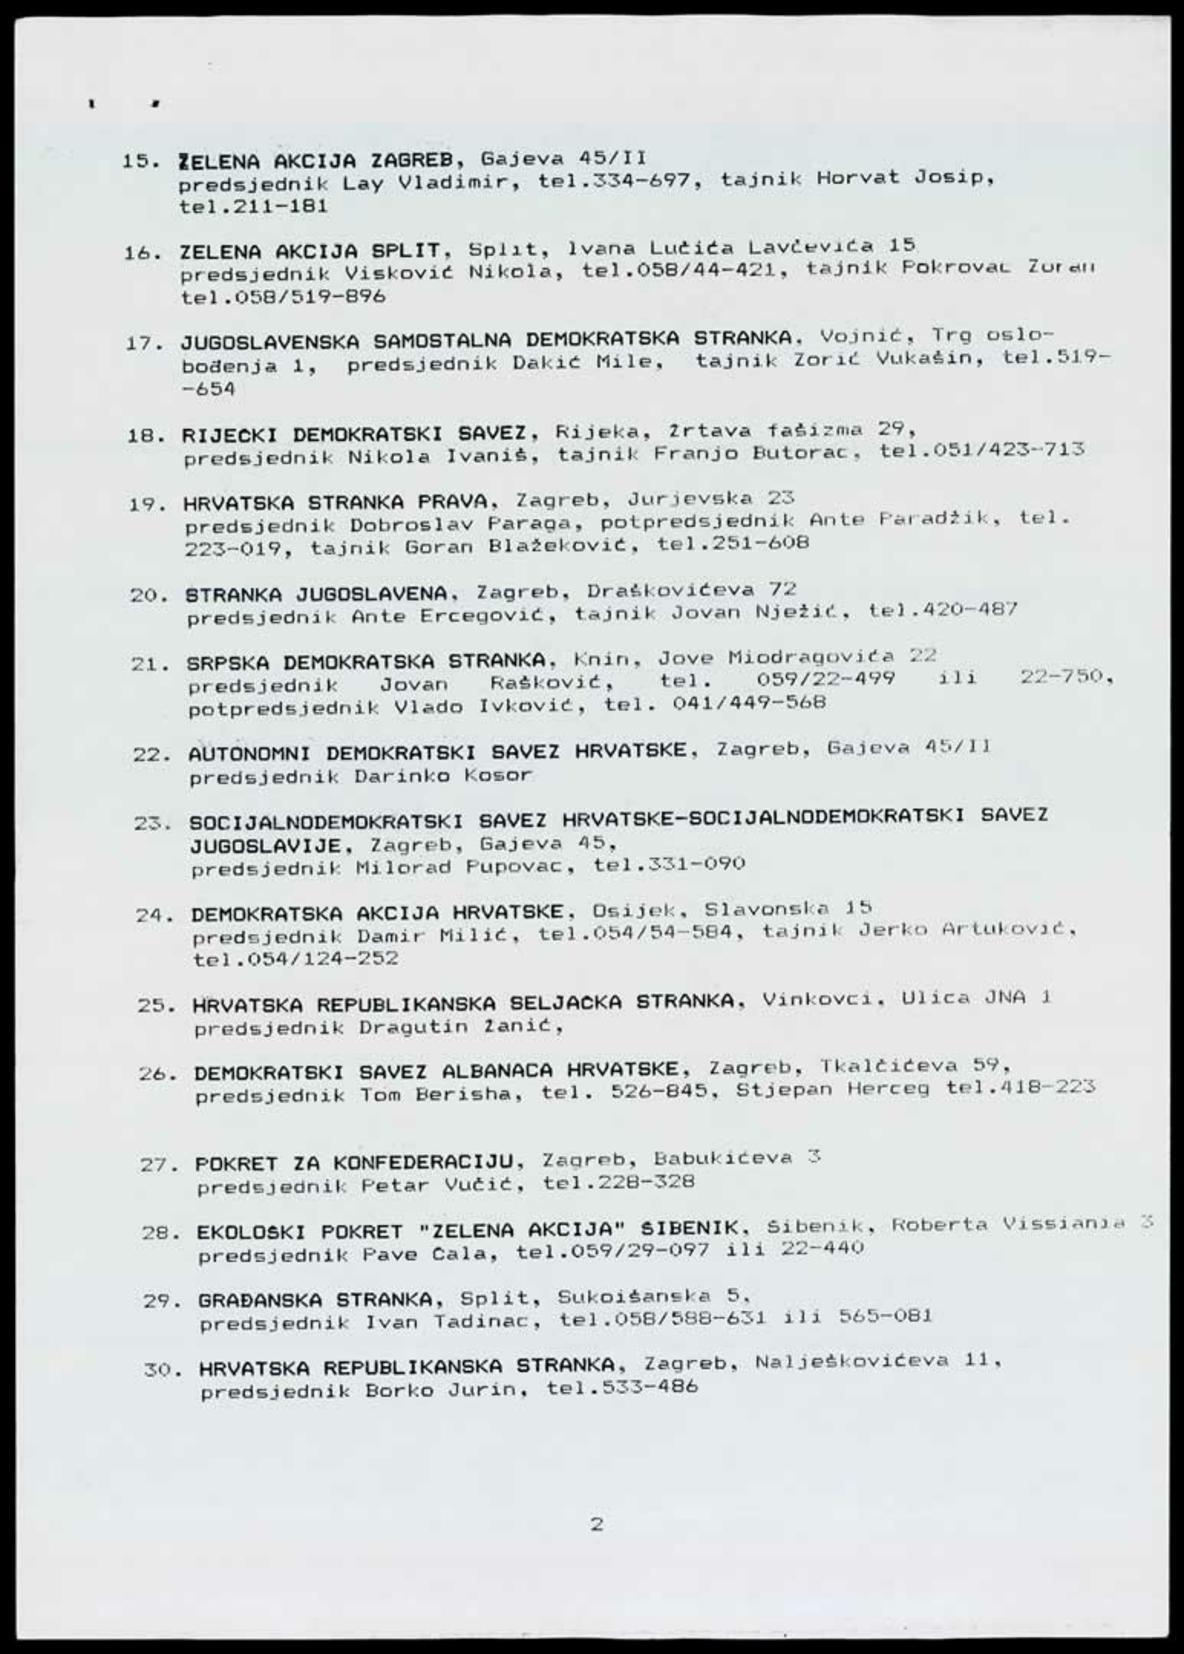 <strong>Popis registriranih političkih organizacija u Hrvatskoj</strong> (stanje 4. travnja 1990.)
<br><br>
HR-HDA-1351. Savez žena Hrvatske, kut. 5
